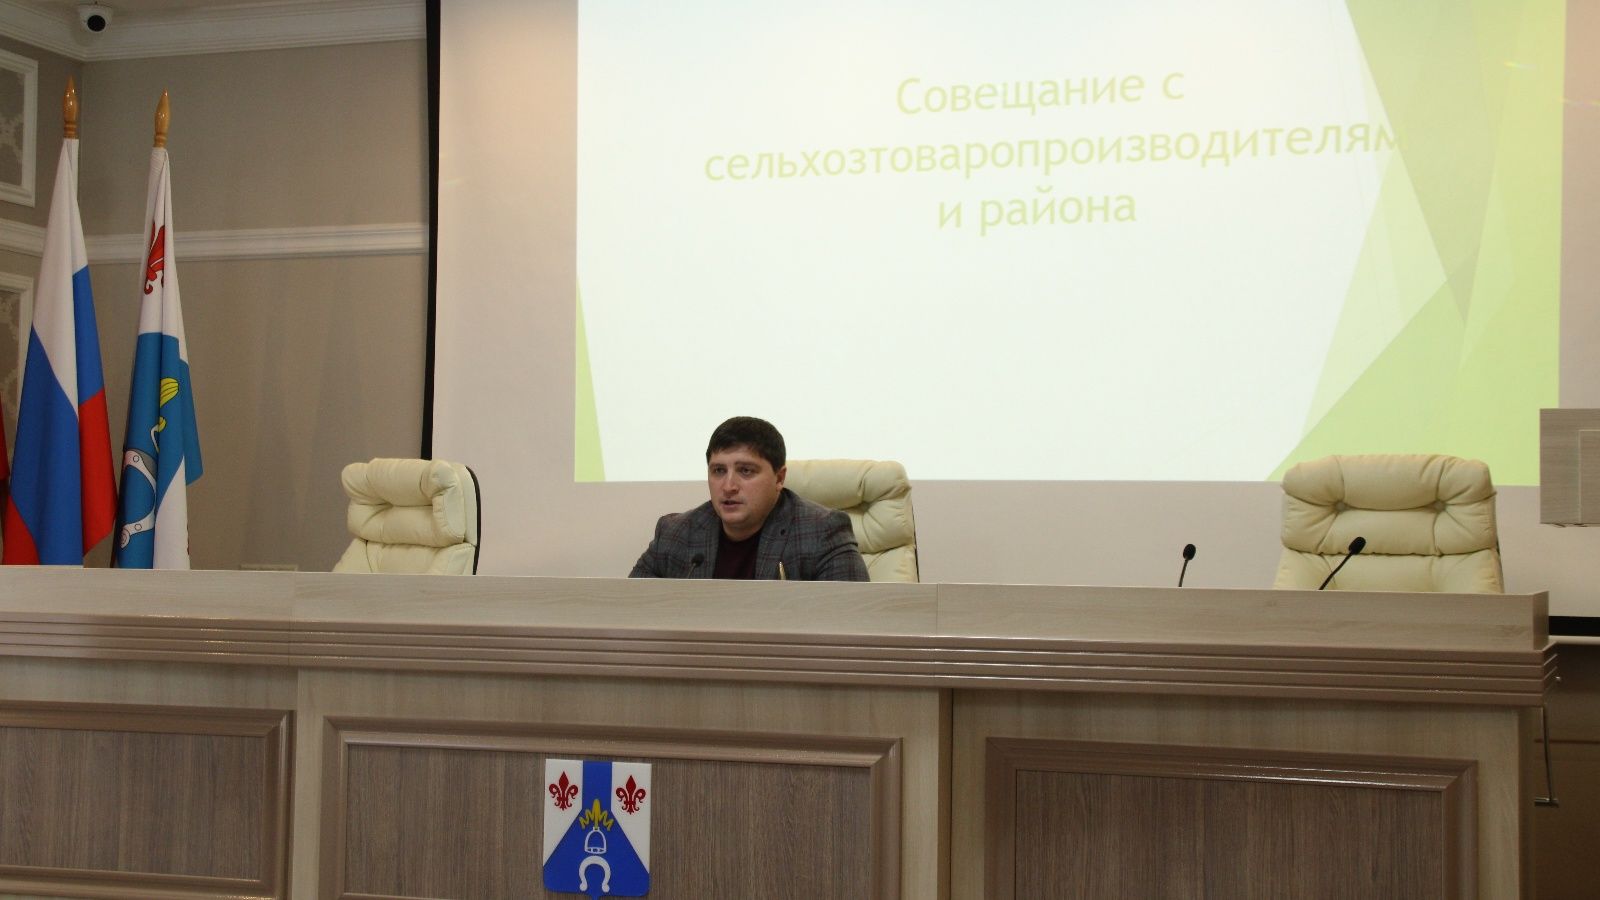 В Менделеевске прошло совещание руководителя Исполнительного комитета с сельхозтоваропроизводителями района